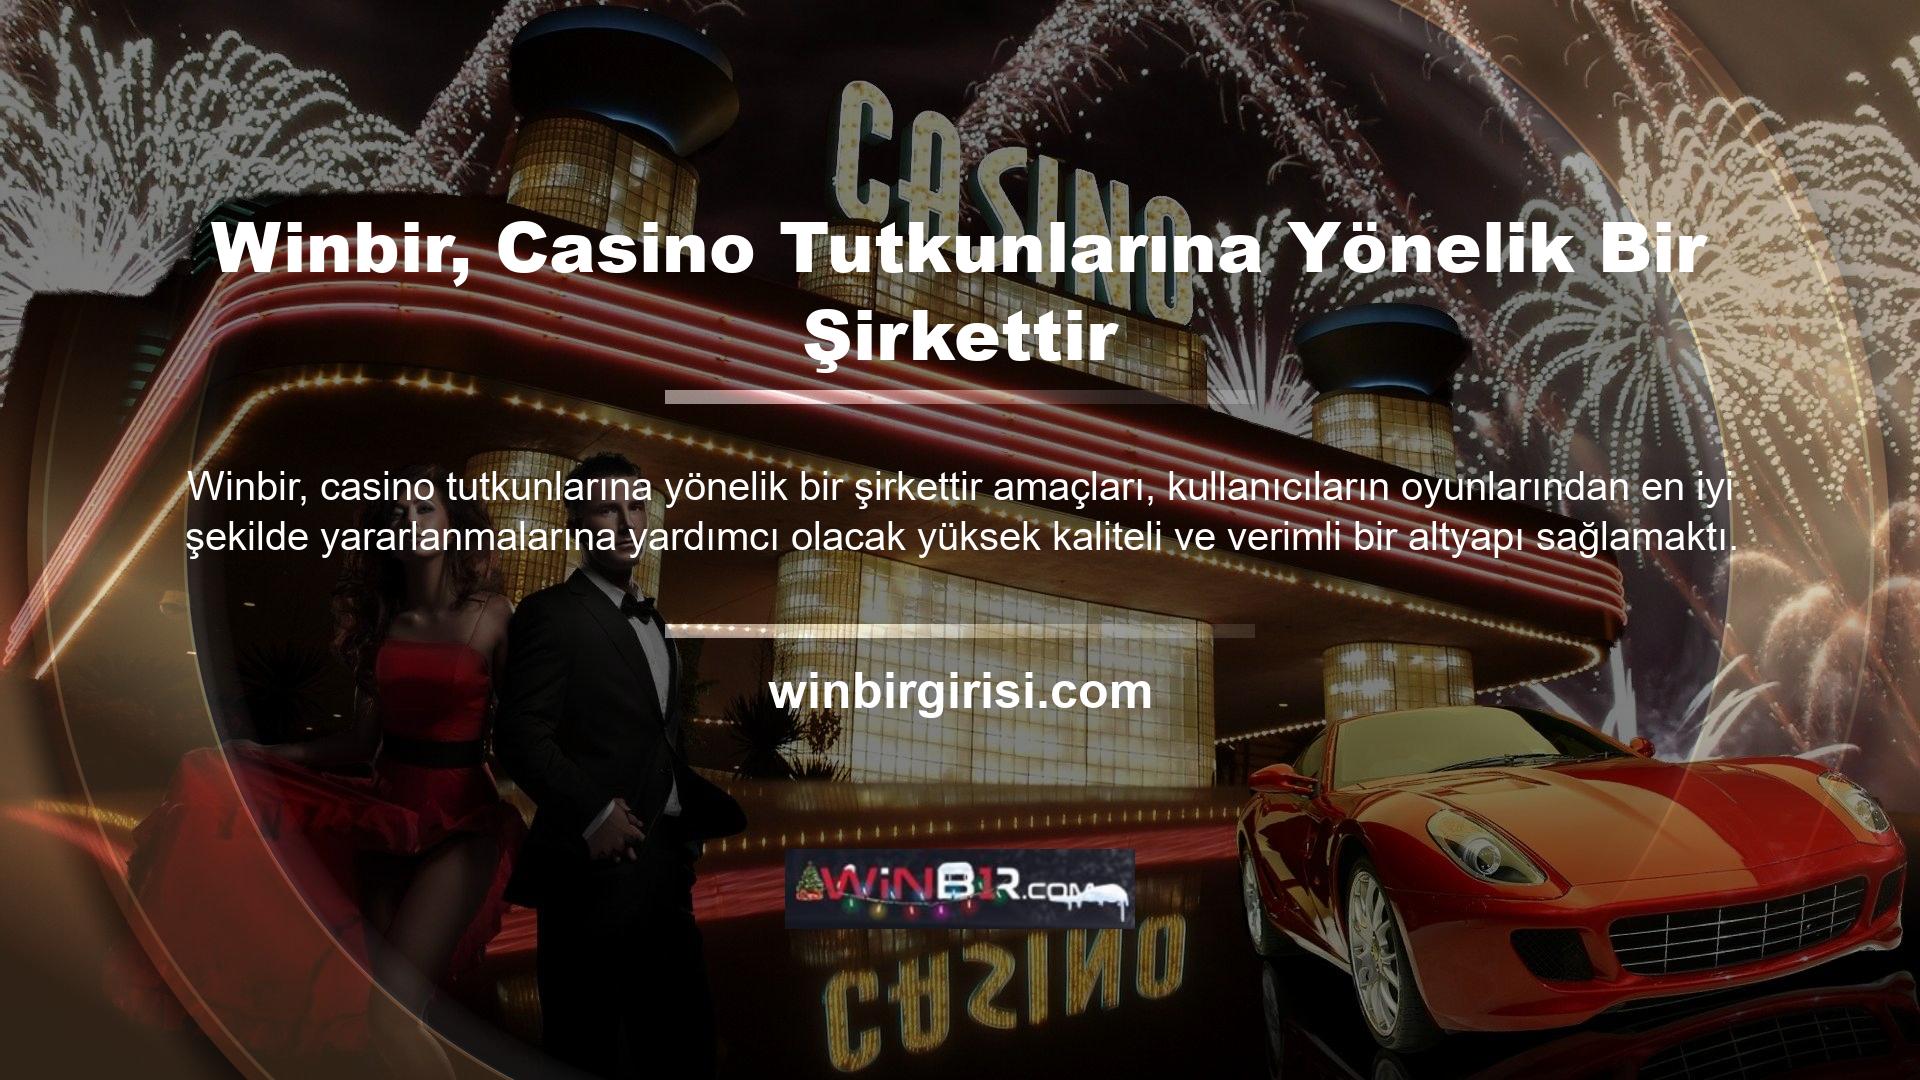 Winbir, geniş slot makinesi yelpazesiyle casino sektöründe sürekli olarak bir numara sırada yer almaktadır